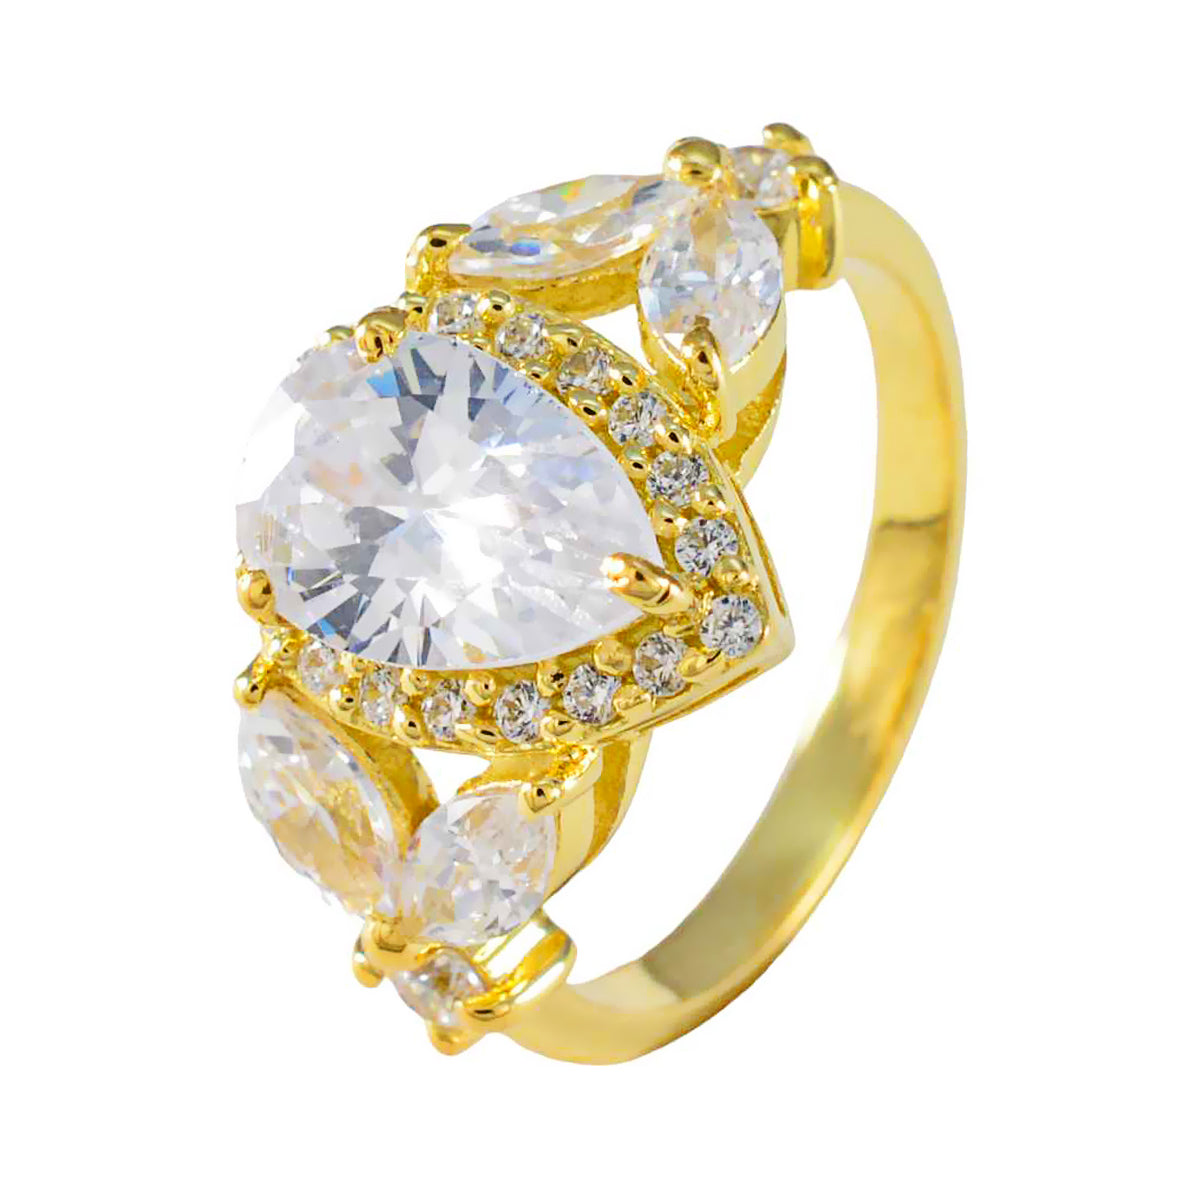 riyo komplett silverring med gult guldplätering vit cz sten päronformad stiftsättning antika smycken fars dag ring